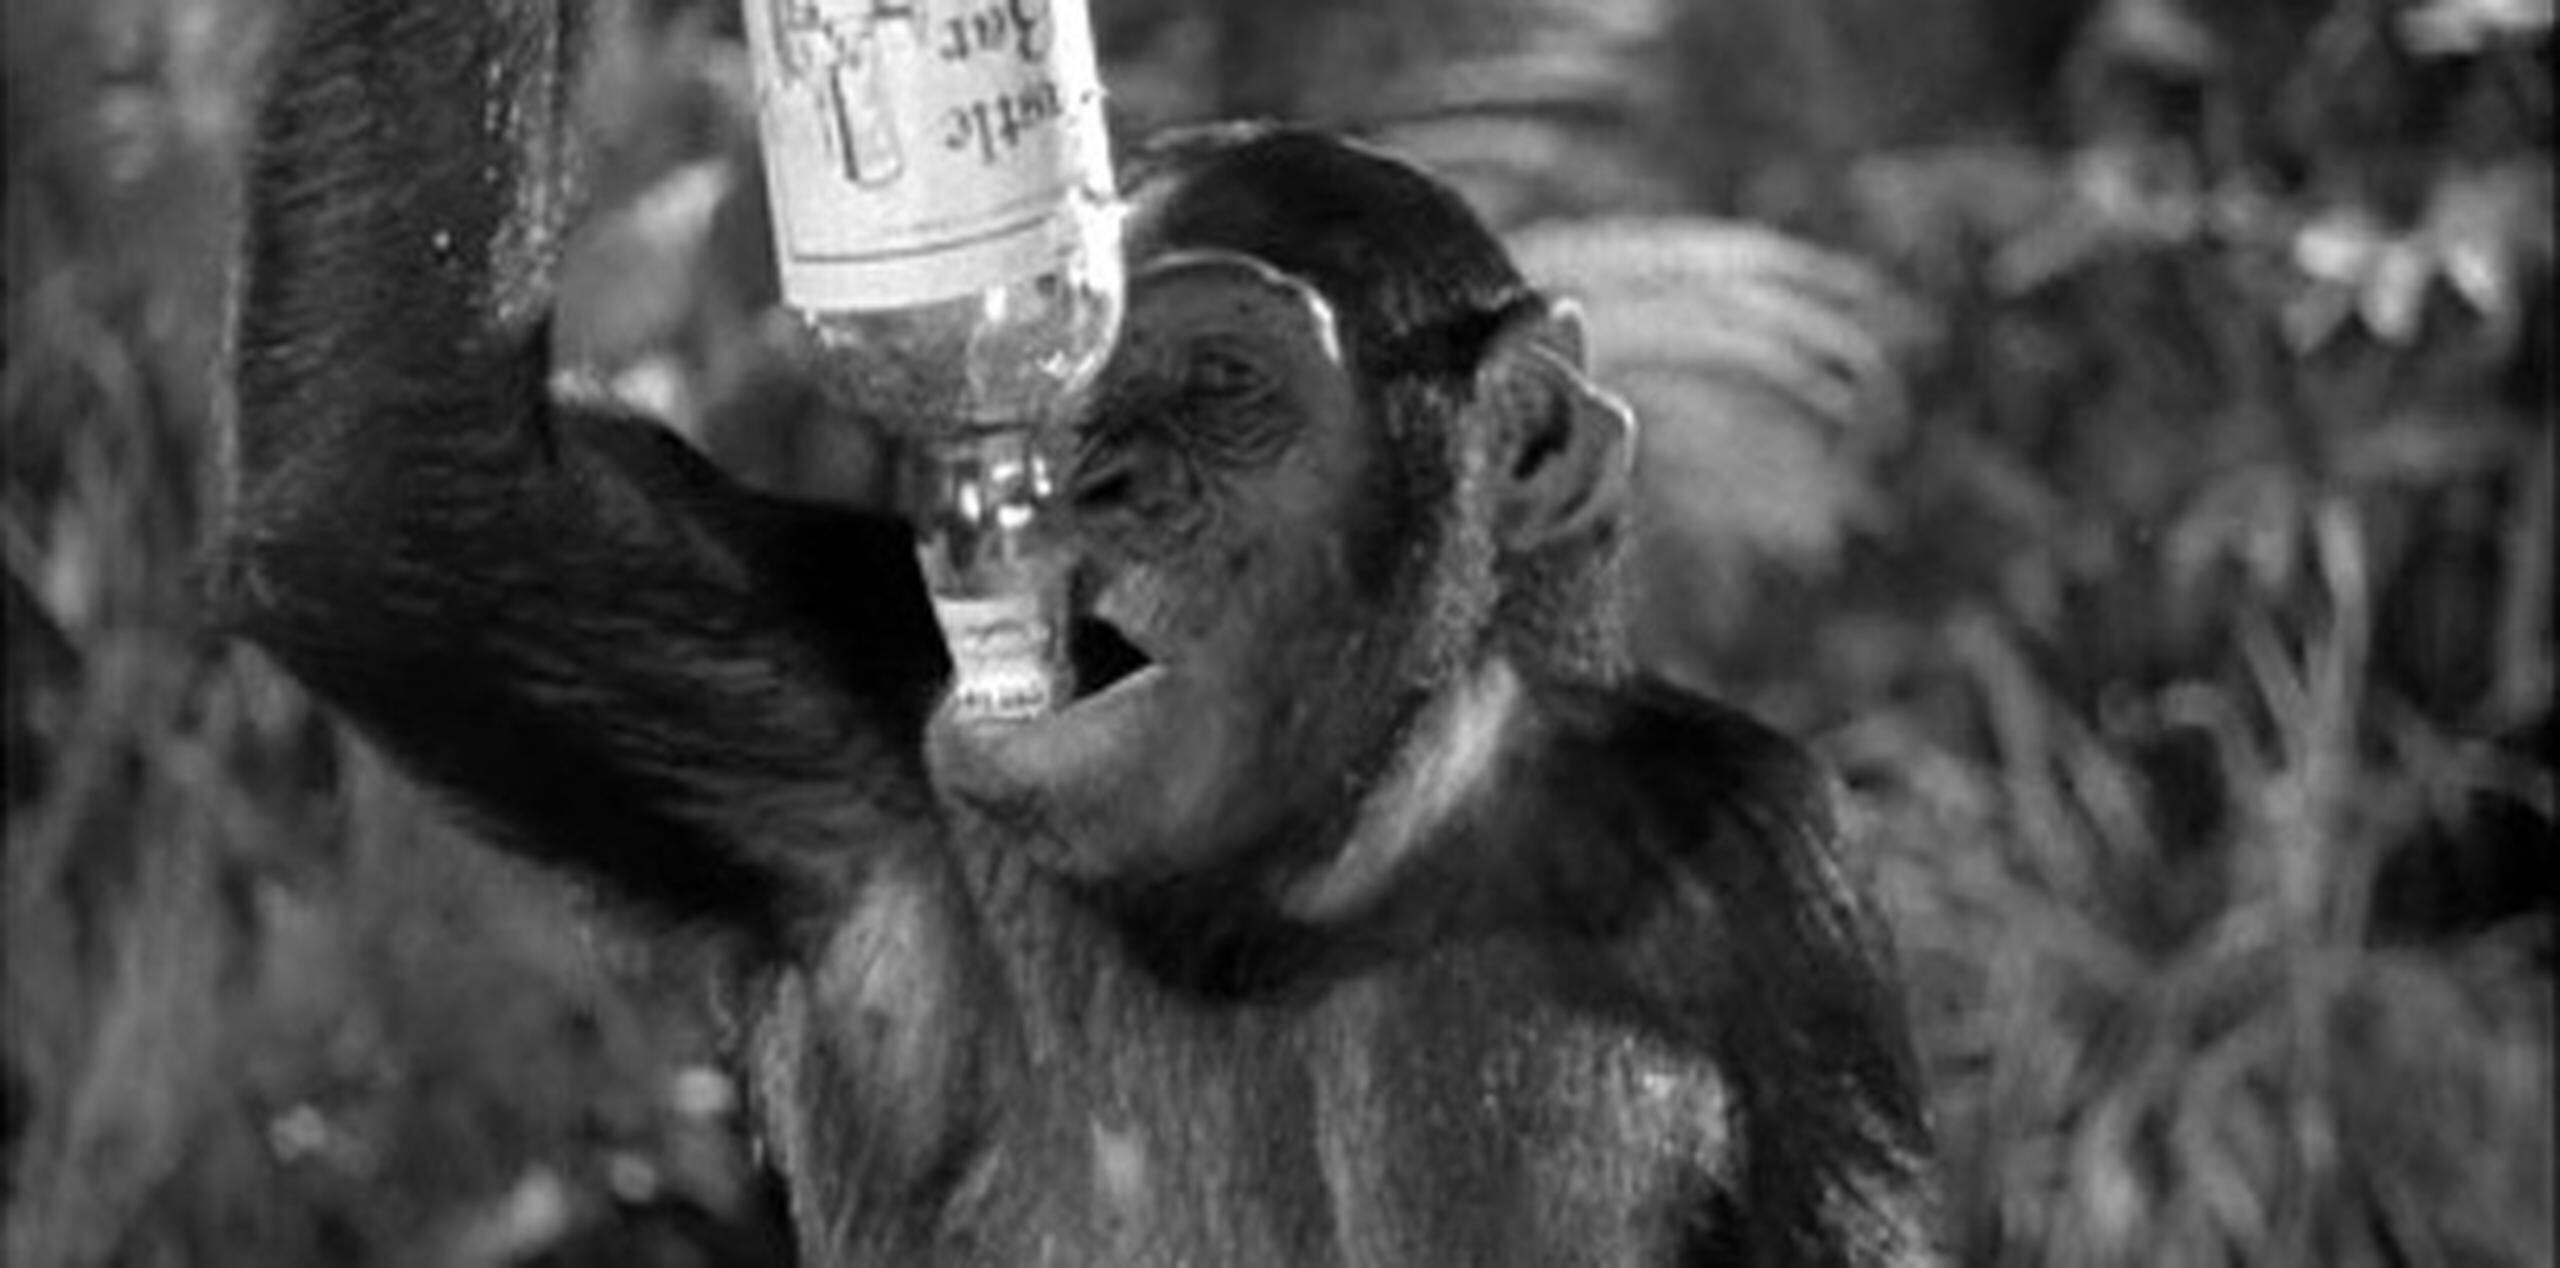 Algunos de los chimpancés "consumieron grandes cantidades de etanol y desplegaron comportamiento de embriaguez", reveló el estudio.